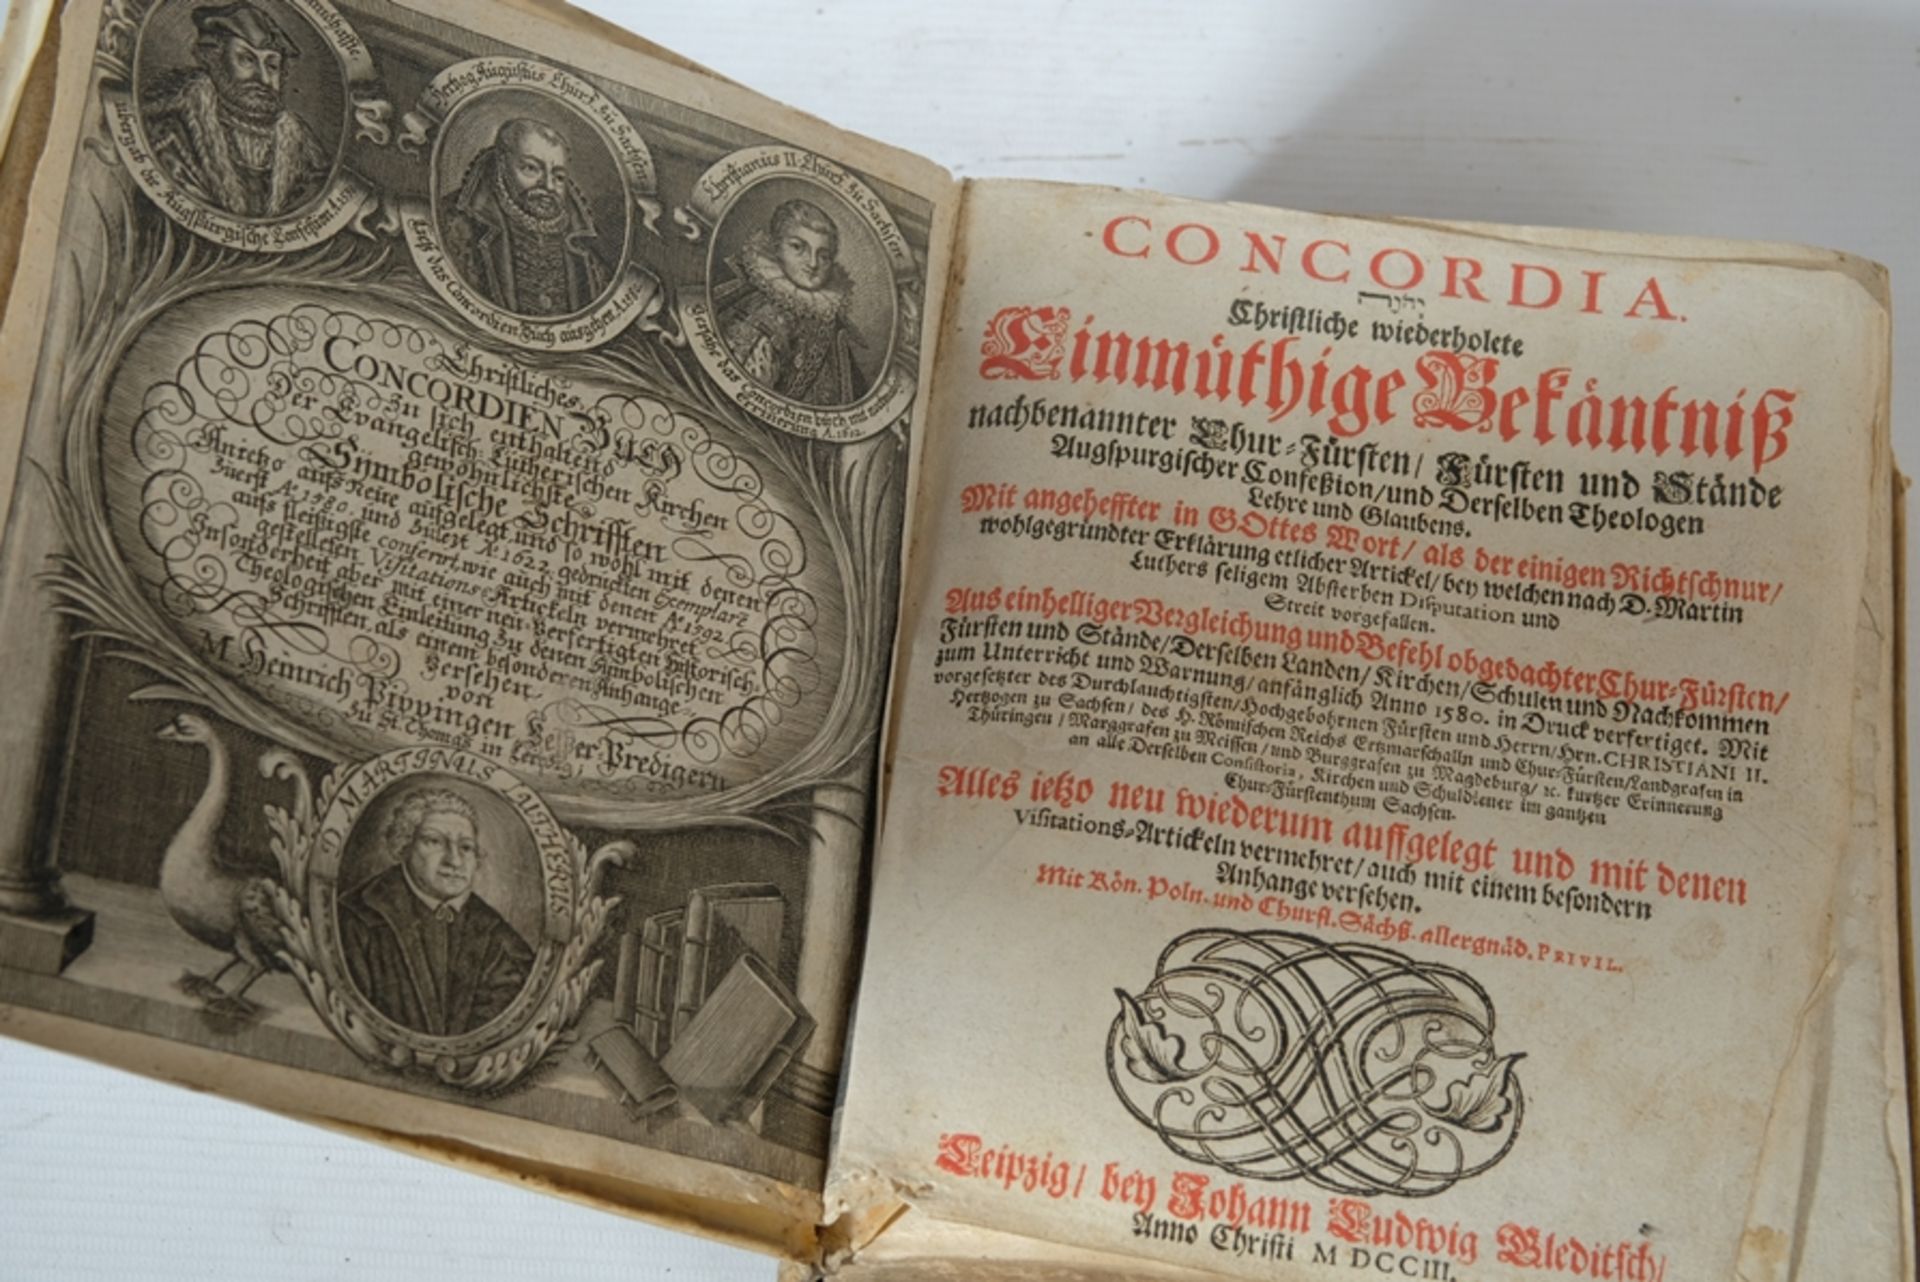 "CONCORDIA" verl. Johann Ludwig Bleditsch, Leipzig, 1703. Neuauflage des Augsburger Bekenntnisses